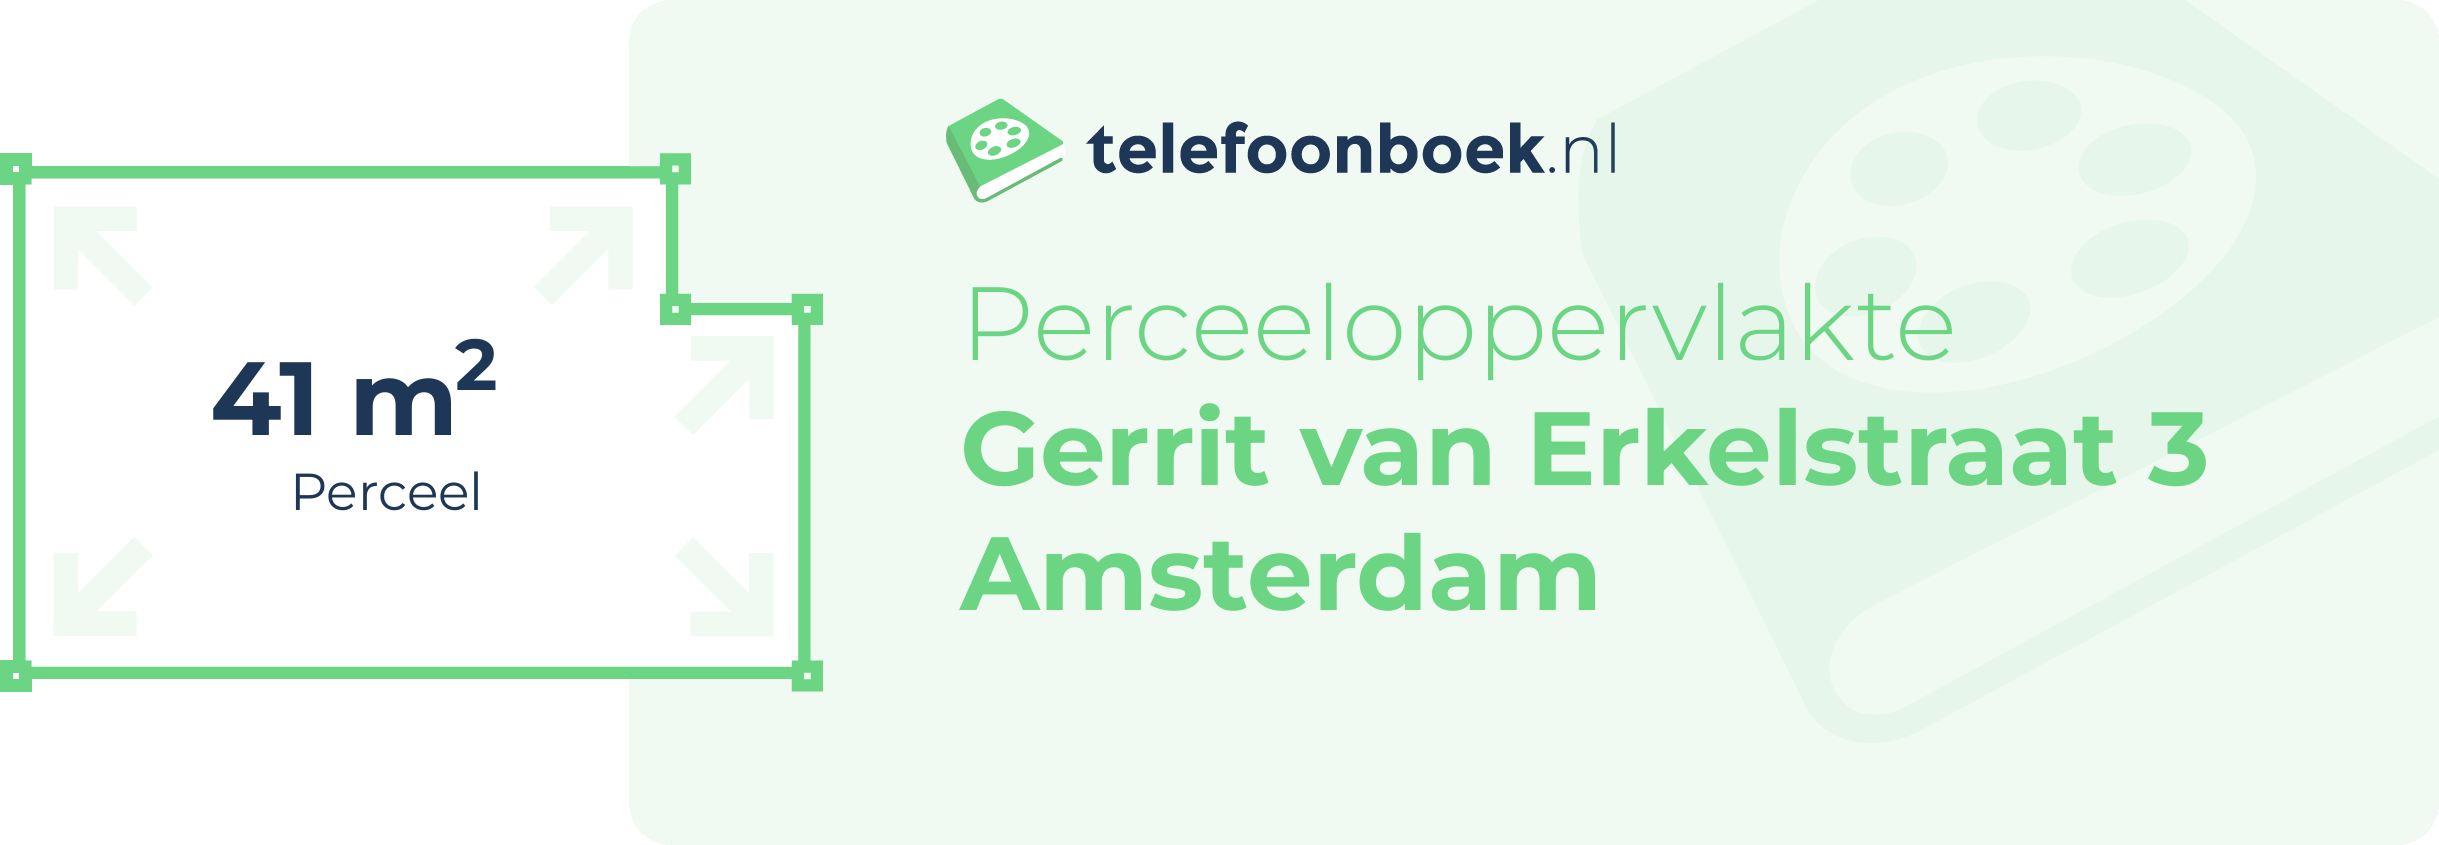 Perceeloppervlakte Gerrit Van Erkelstraat 3 Amsterdam